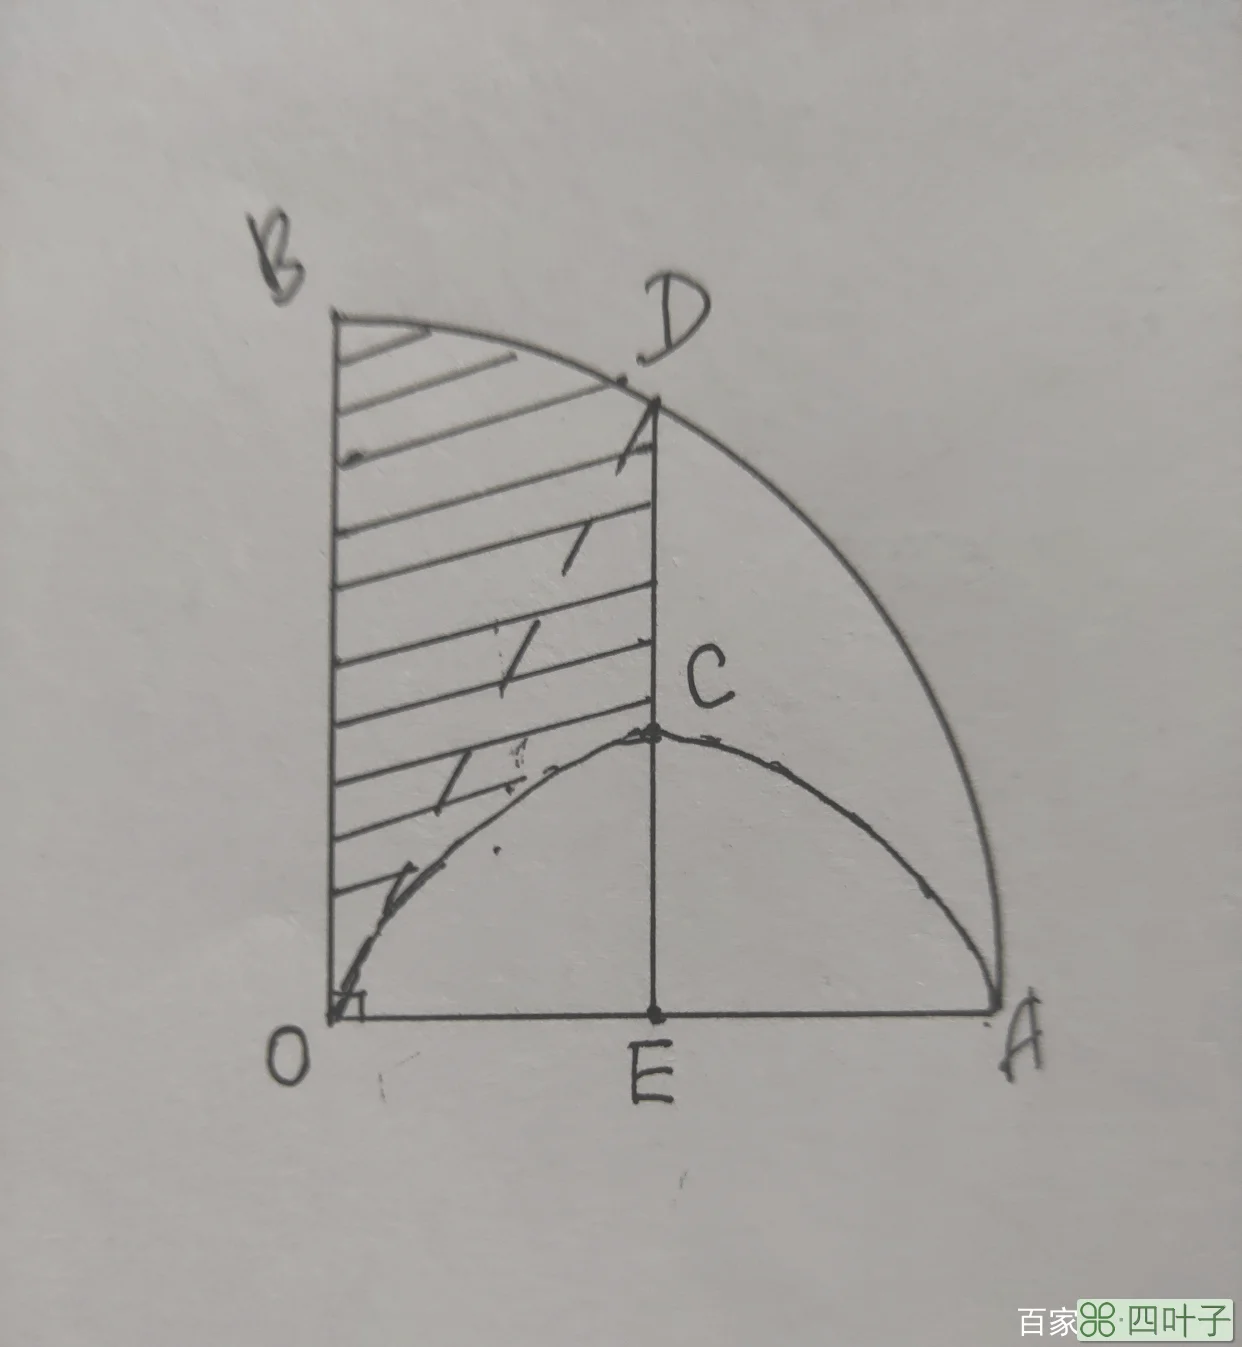 半圆形面积公式,半圆形面积公式怎么算出平方